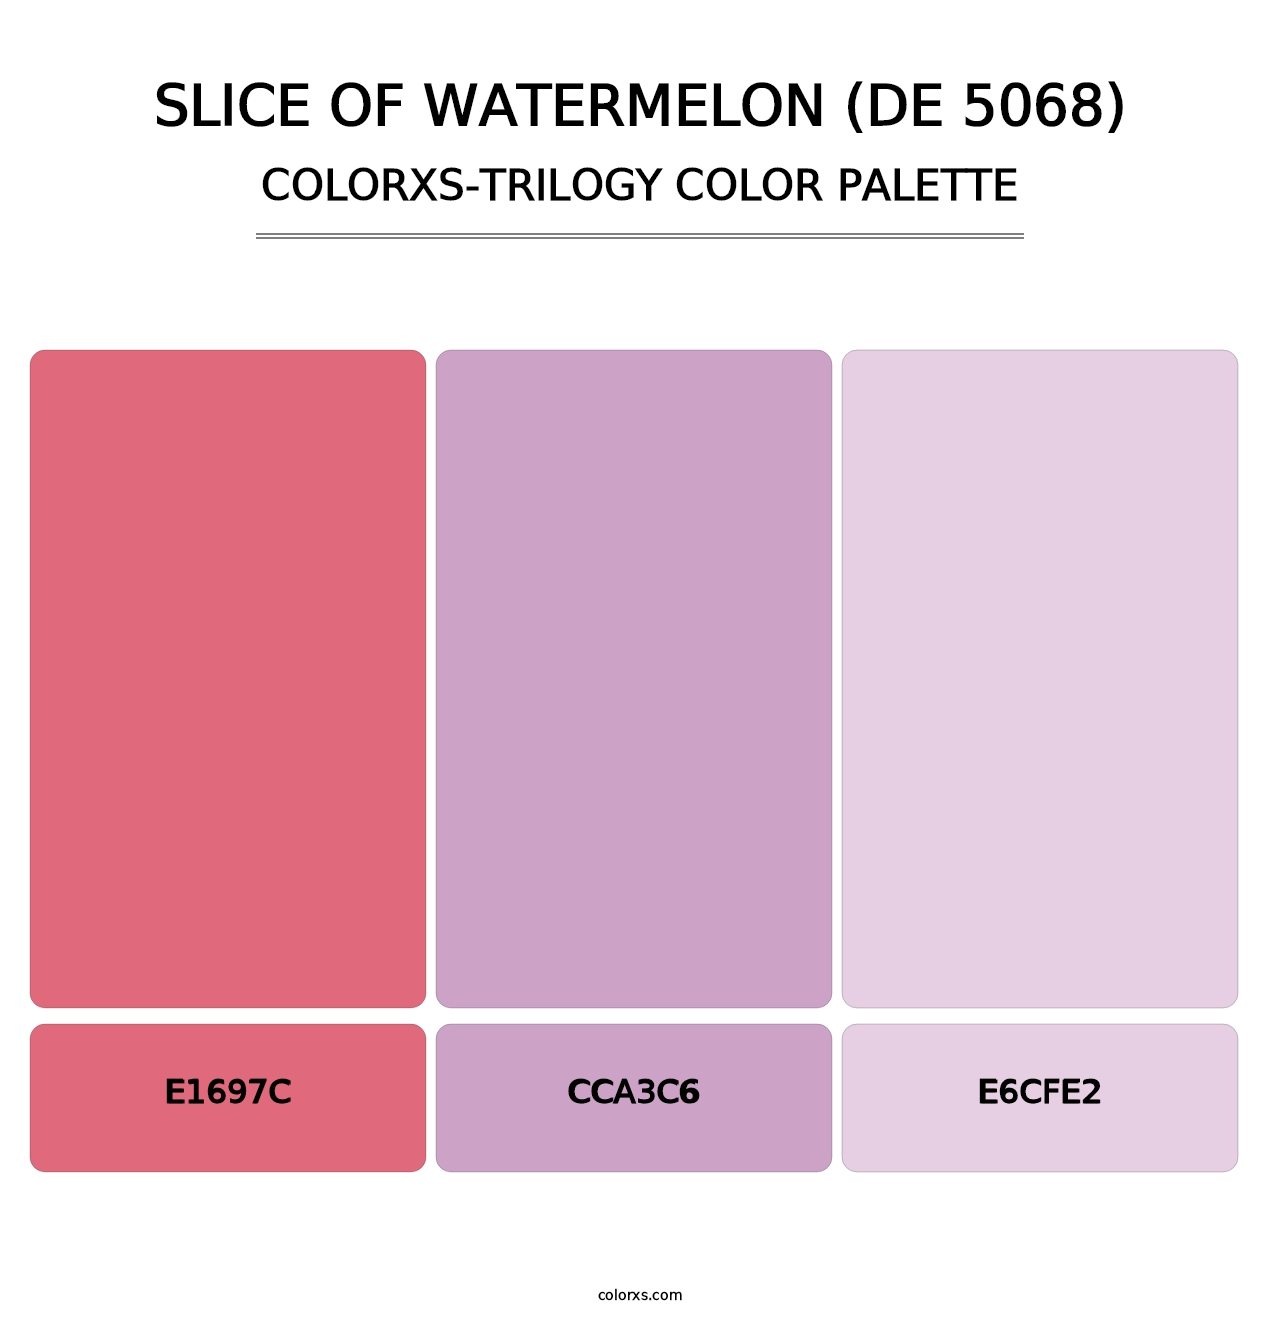 Slice of Watermelon (DE 5068) - Colorxs Trilogy Palette